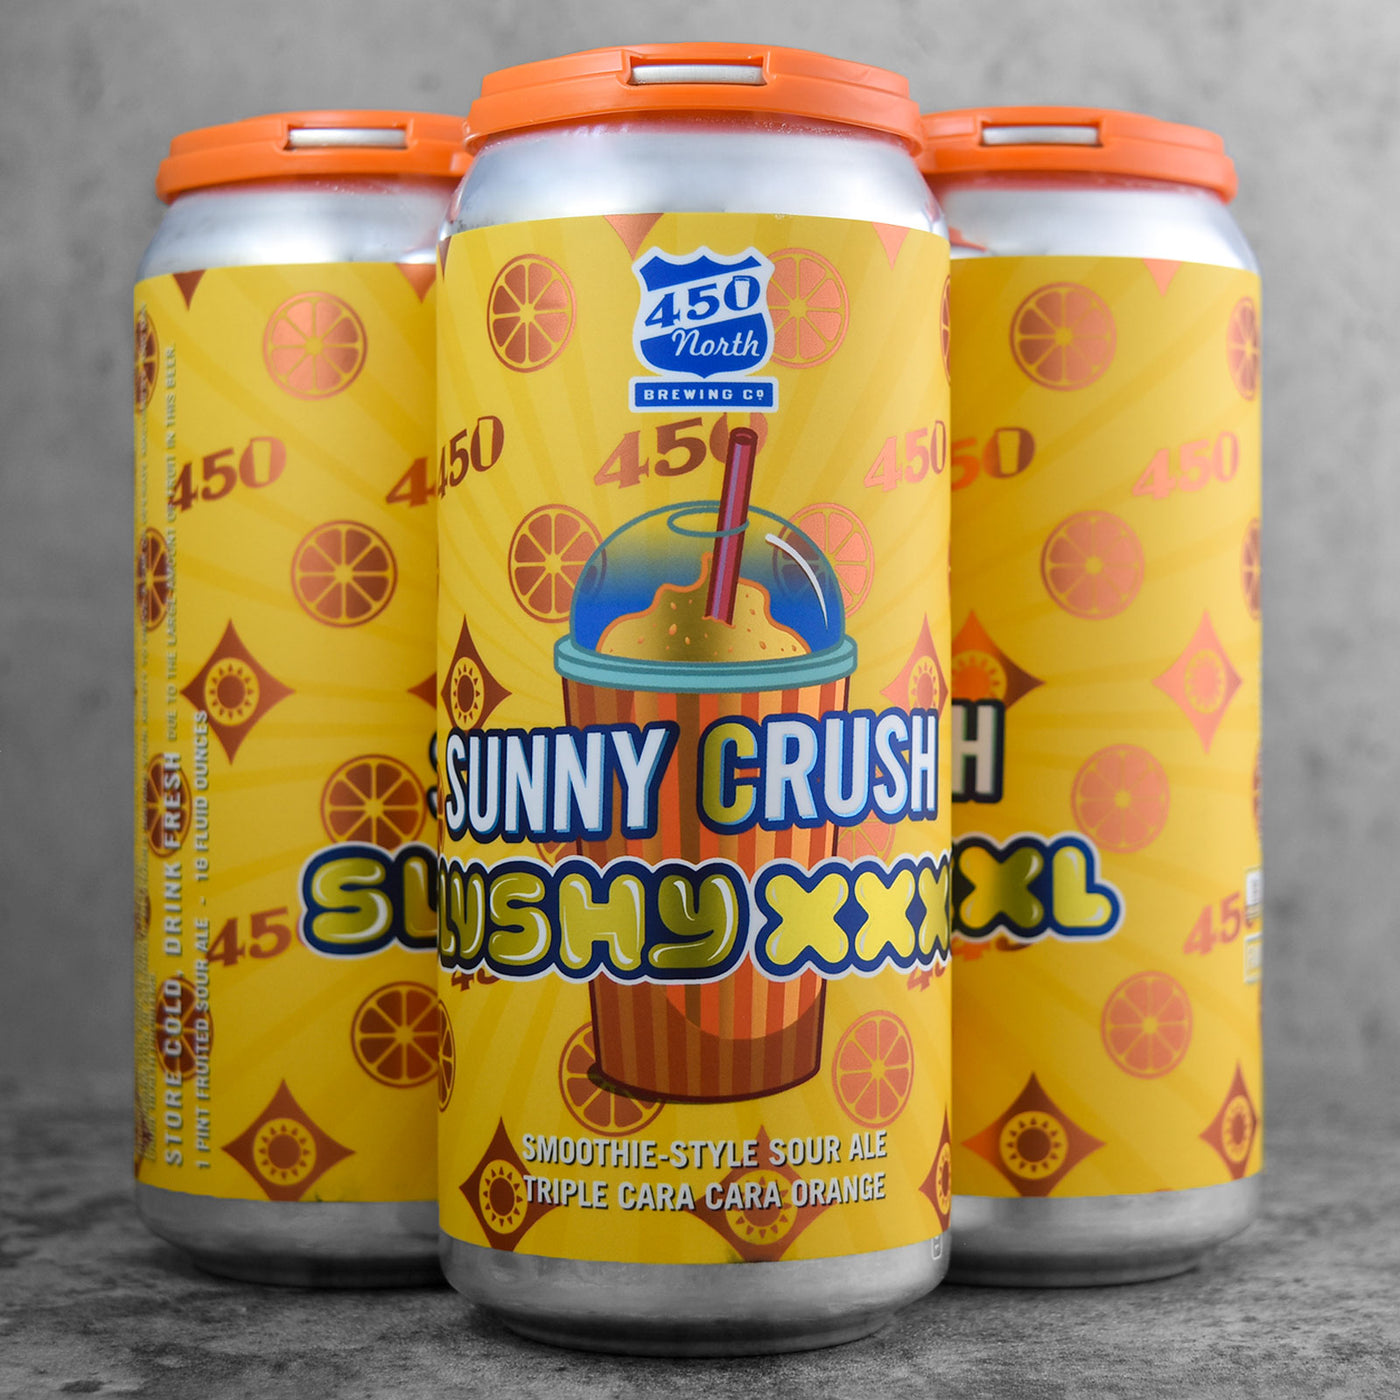 450 North Sunny Crush Slushy XXXL